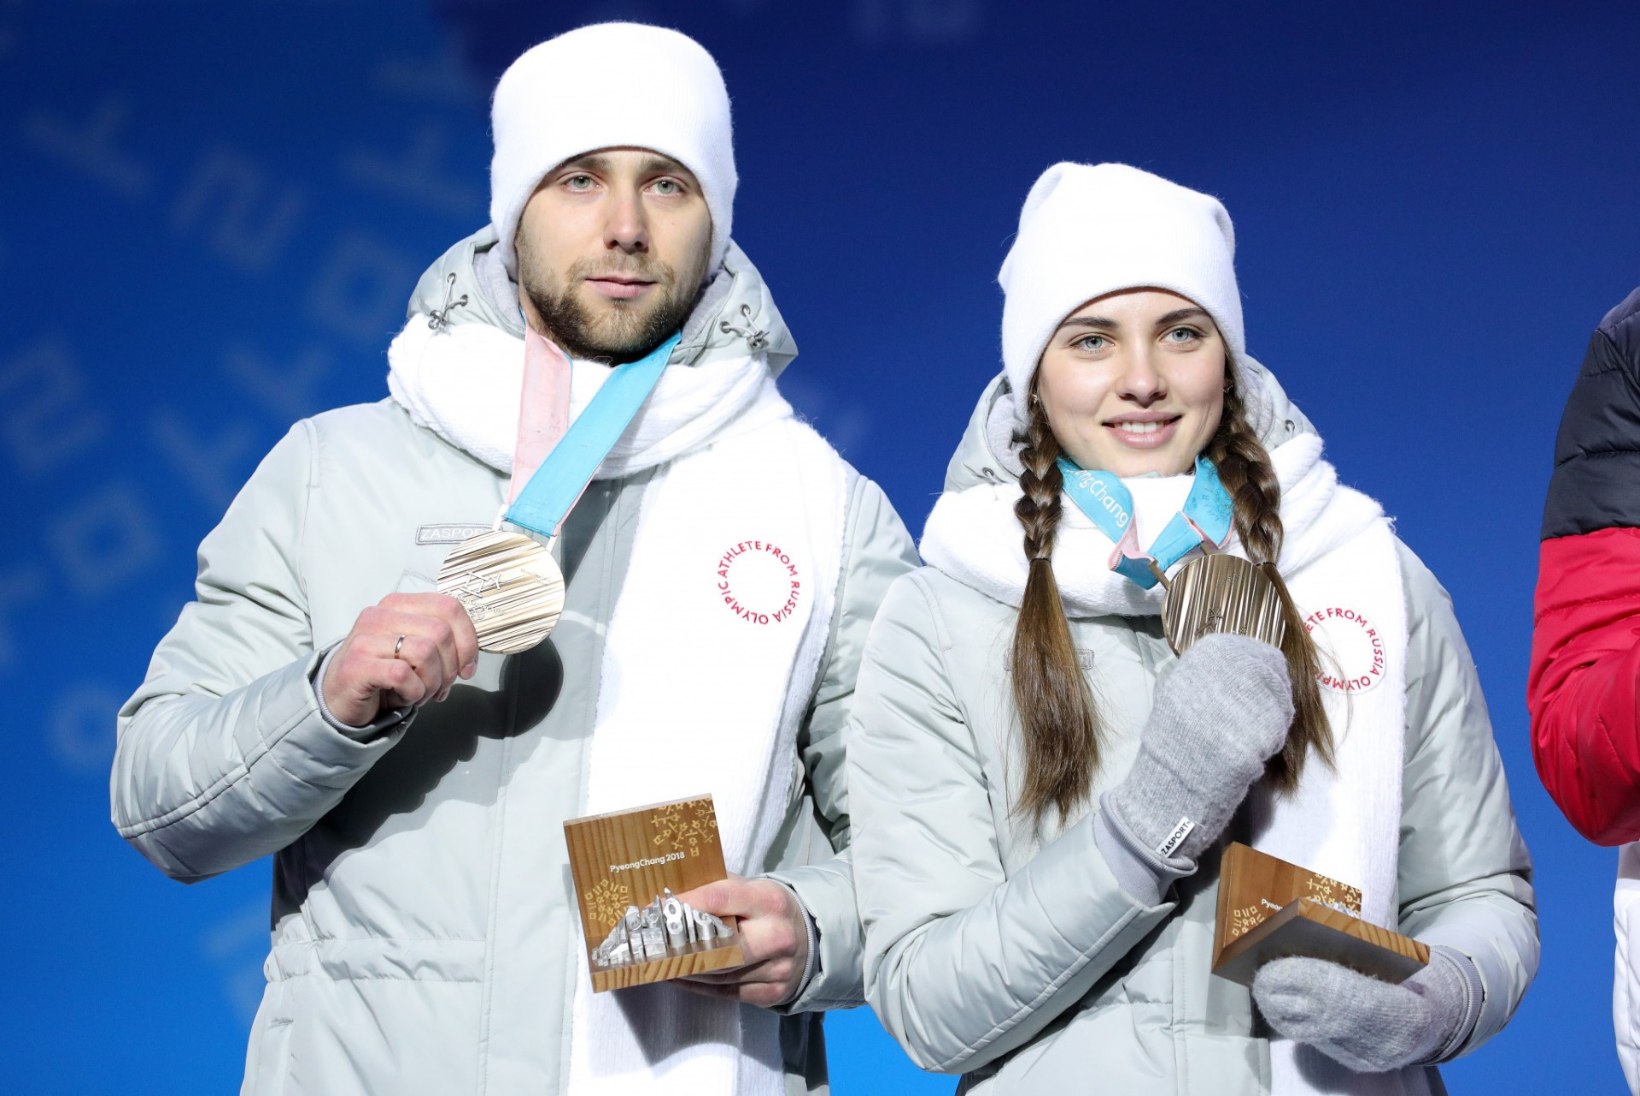 HAKKAB TULEMA! Pyeongchangi olümpialt medali võitnud venelast süüdistatakse dopingu tarvitamises